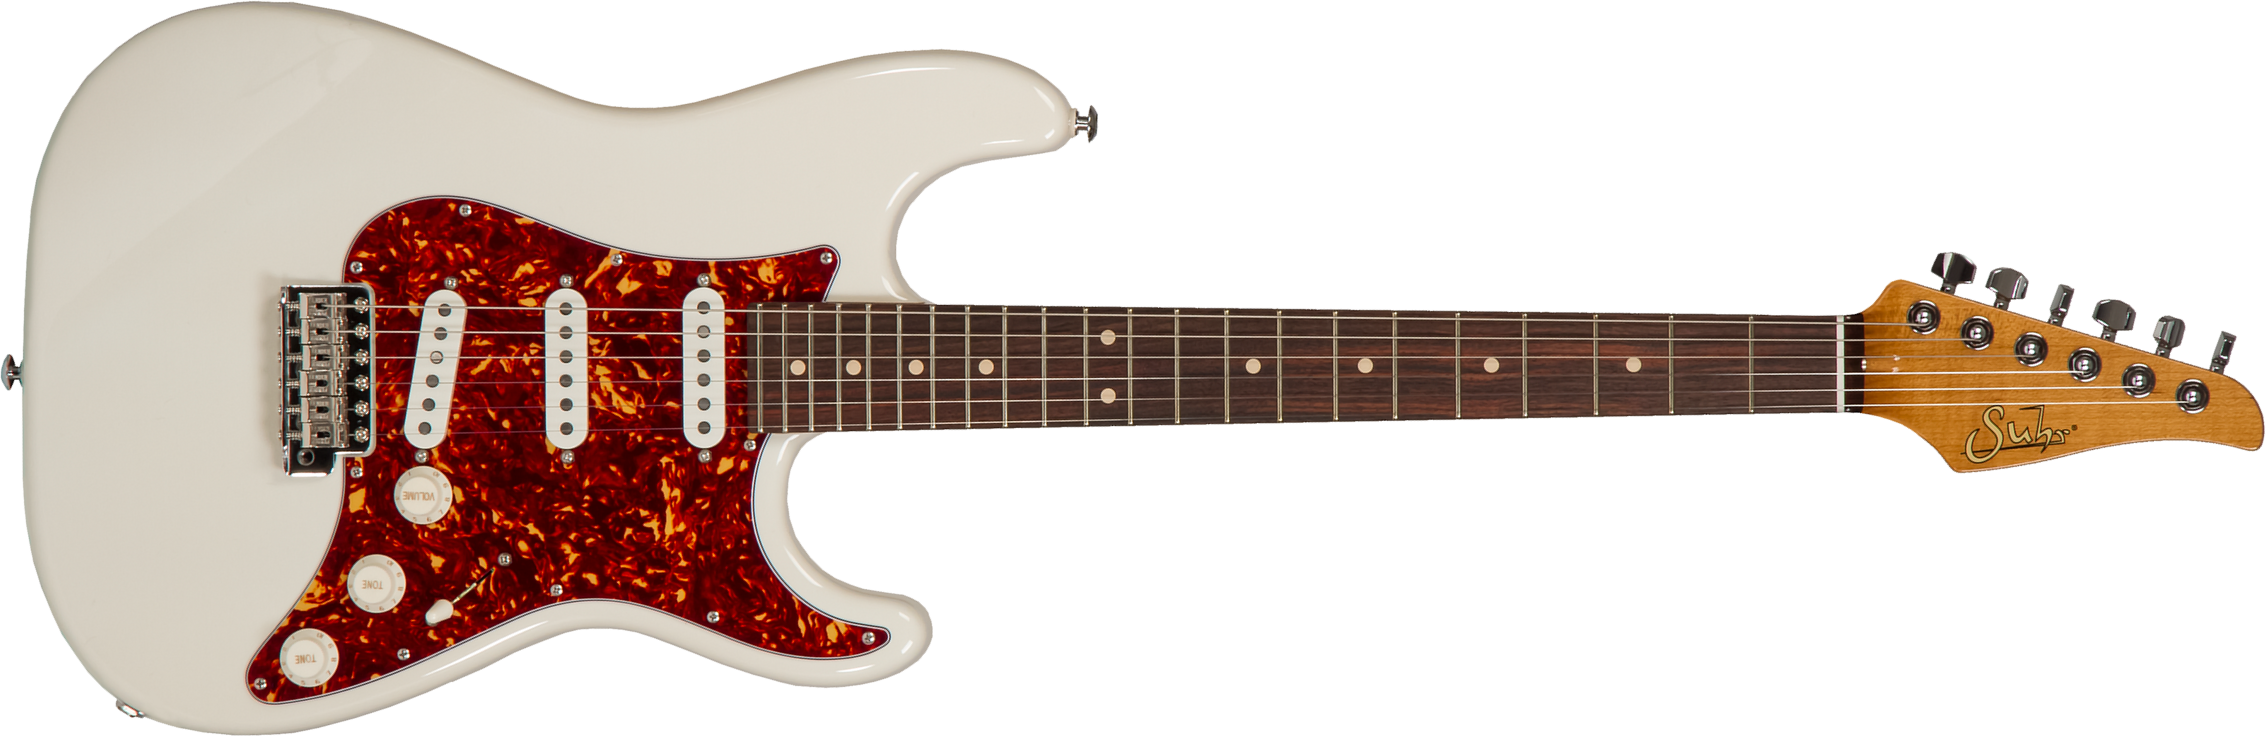 Suhr Scott Henderson Classic S 01-sig-0009 Signature 3s Trem Rw #67764 - Olympic White - Elektrische gitaar in Str-vorm - Main picture